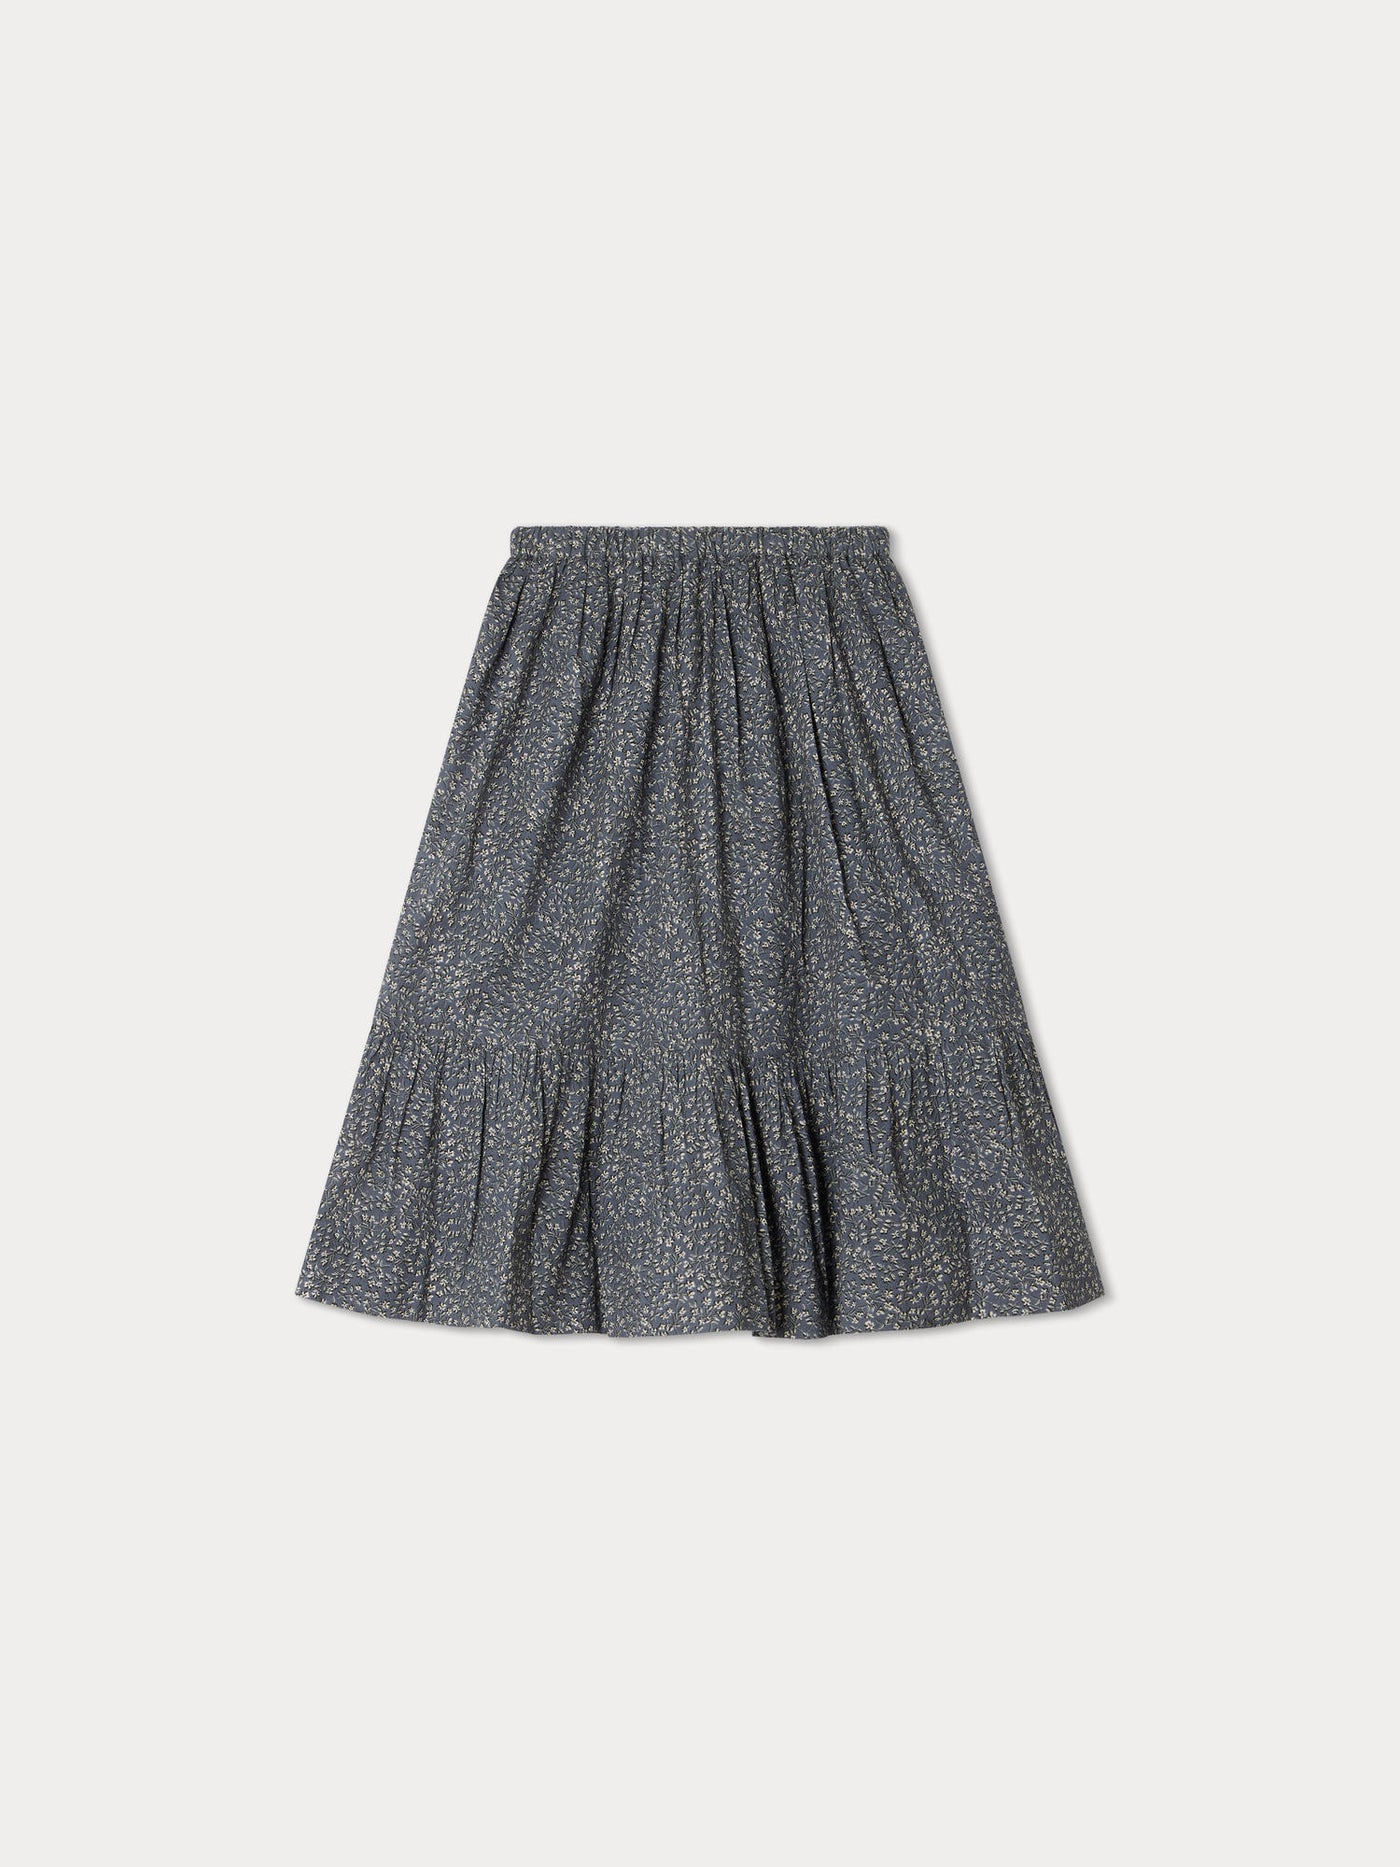 Daisy Skirt slate grey